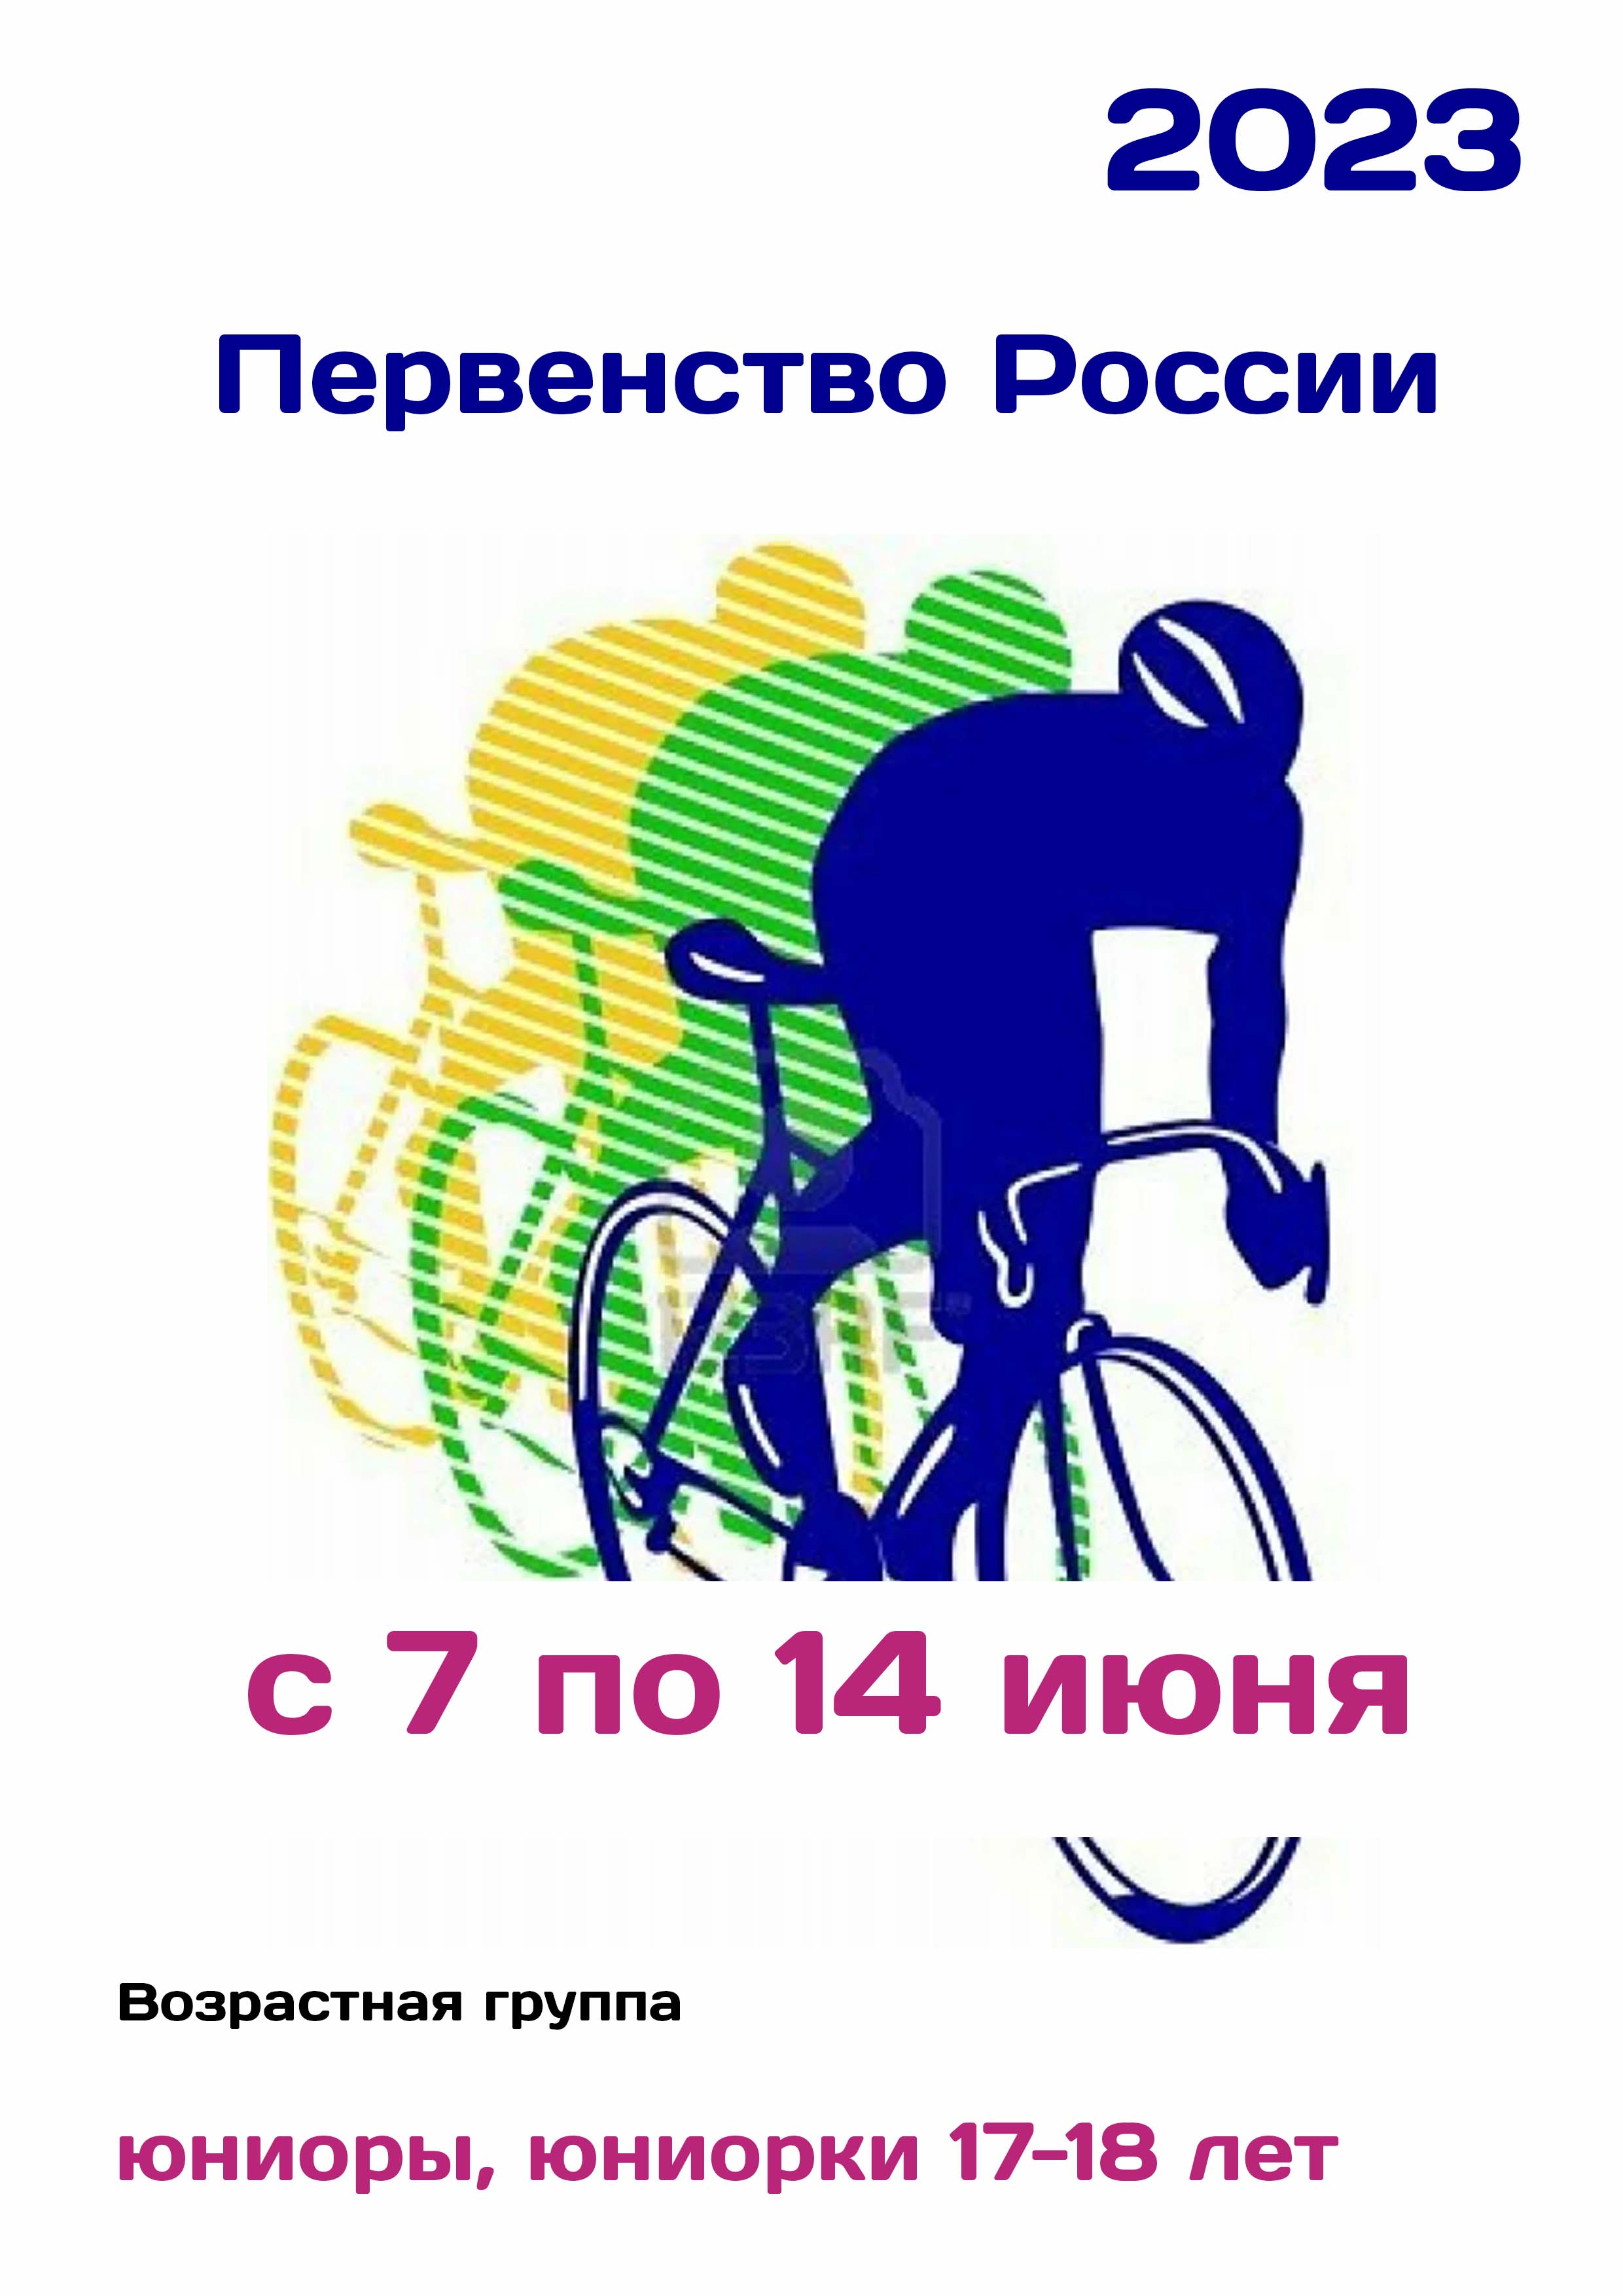 Первенство России по велоспорту 7  Kesäkuun
 2023  vuonna
 